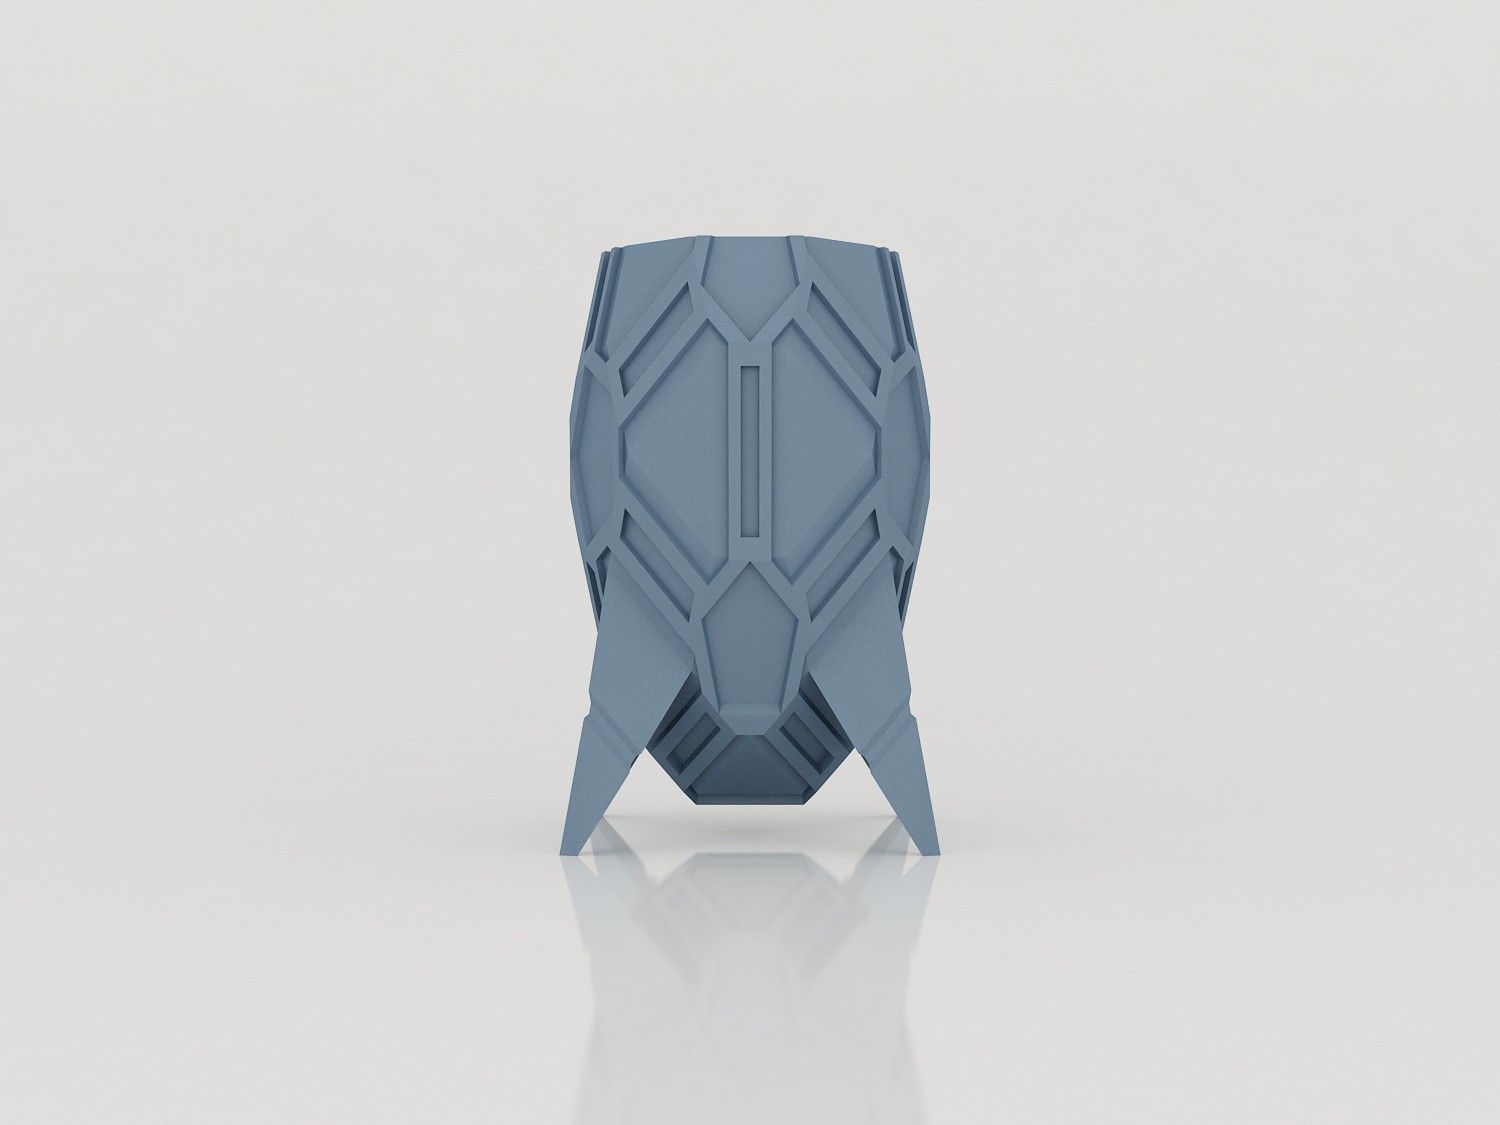 vase_stromboide_face01.jpg Download STL file Stromboid Vase • 3D printing design, Tibe-Design